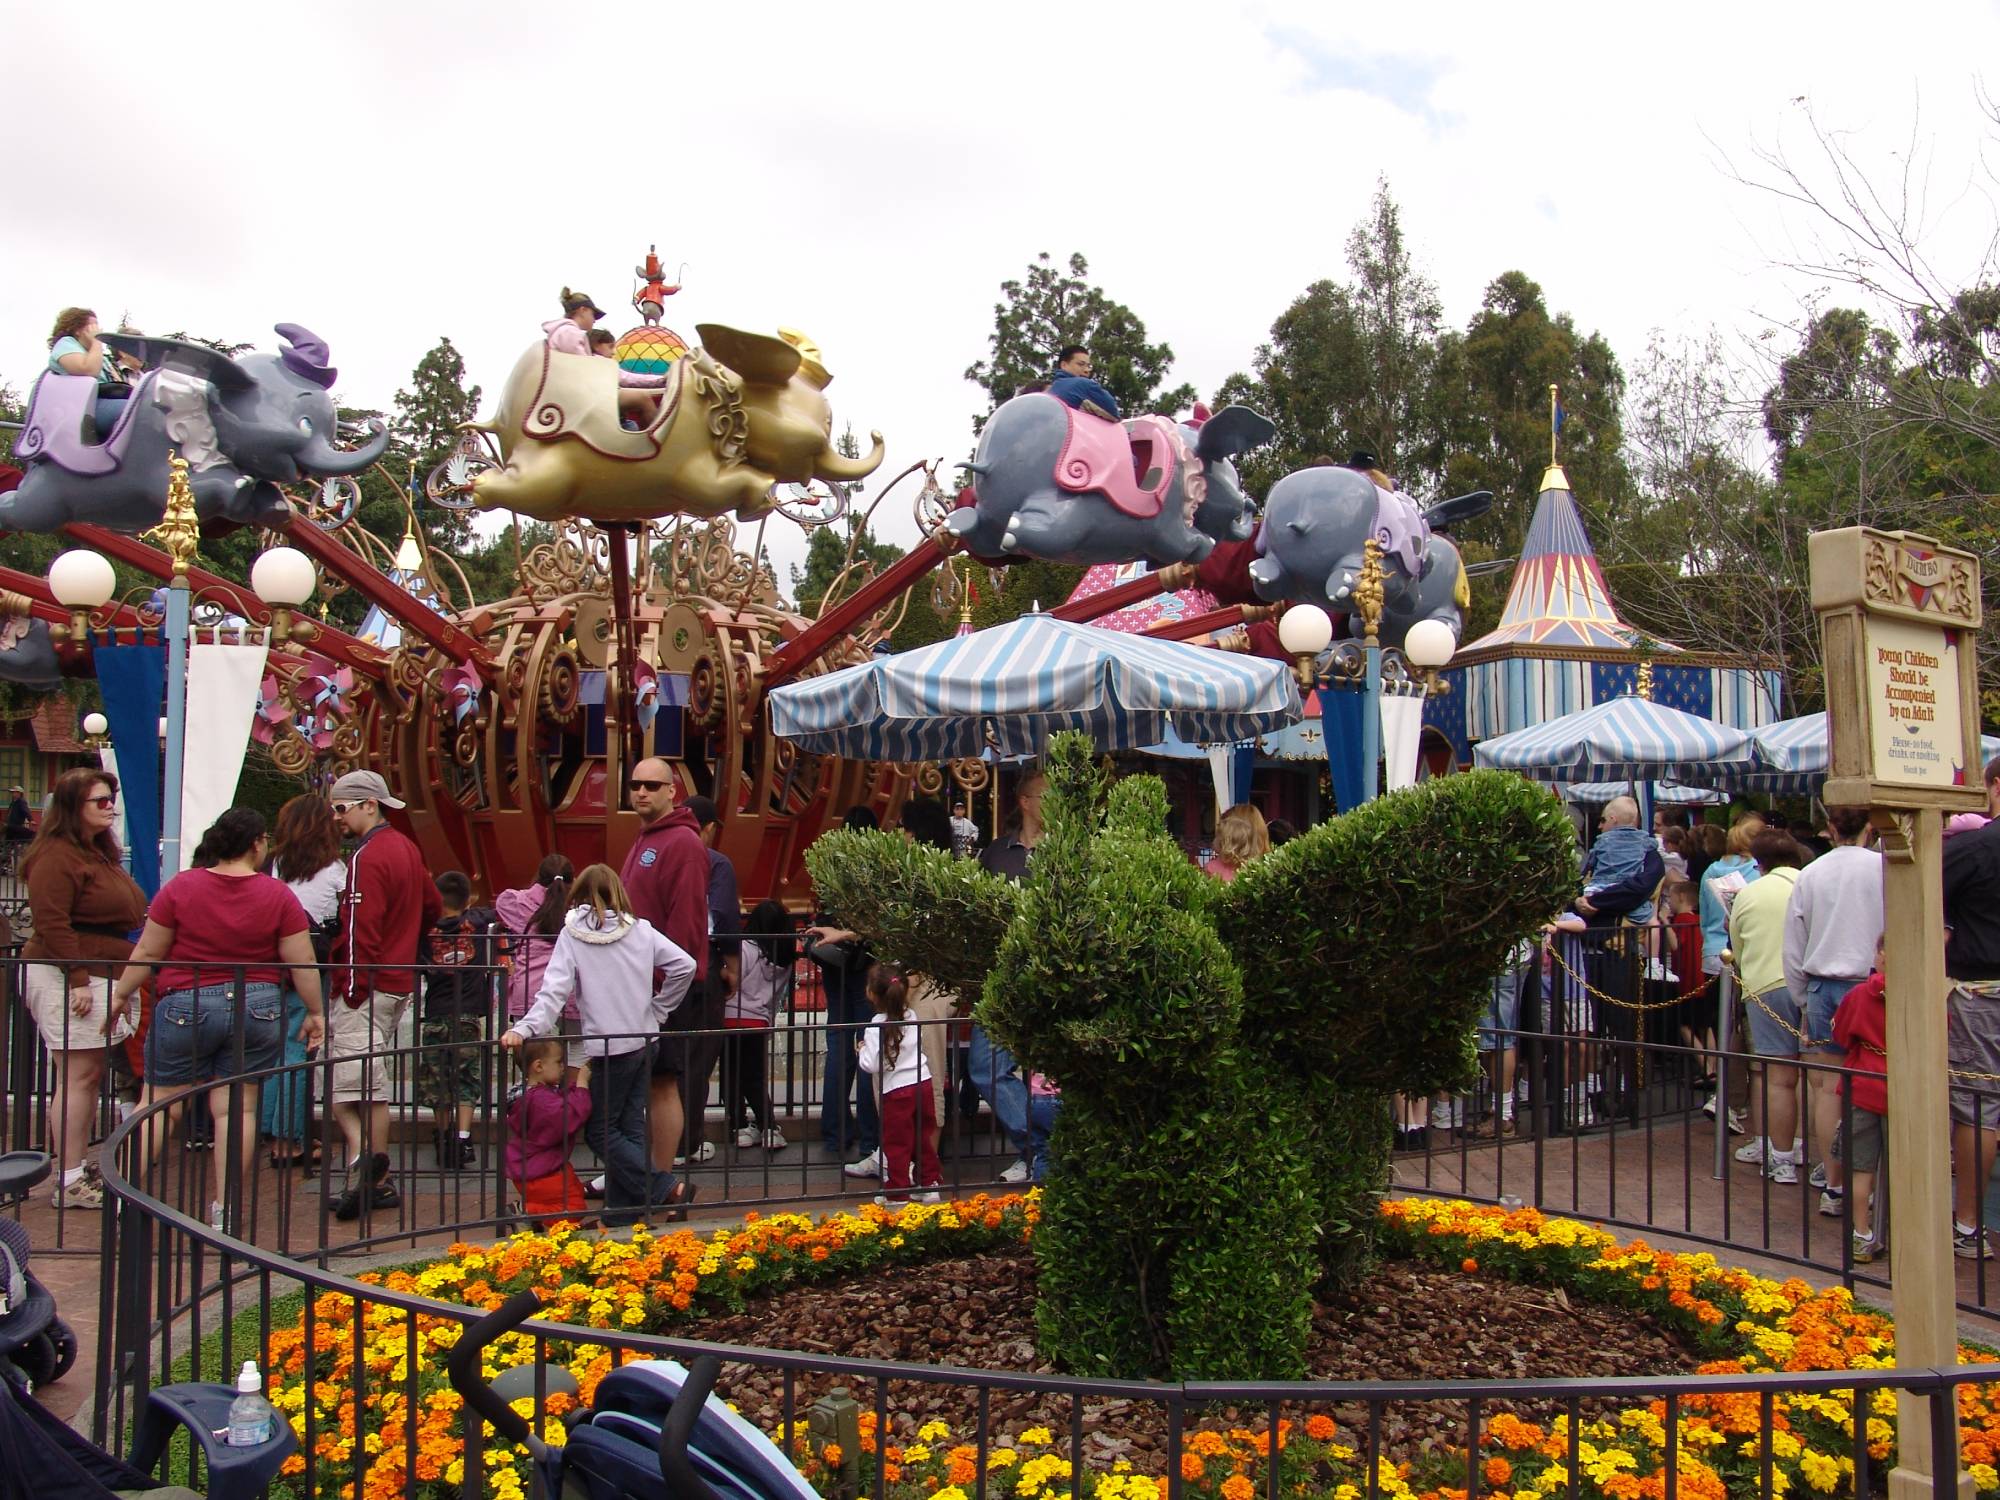 Disneyland - Dumbo the Flying Elephant